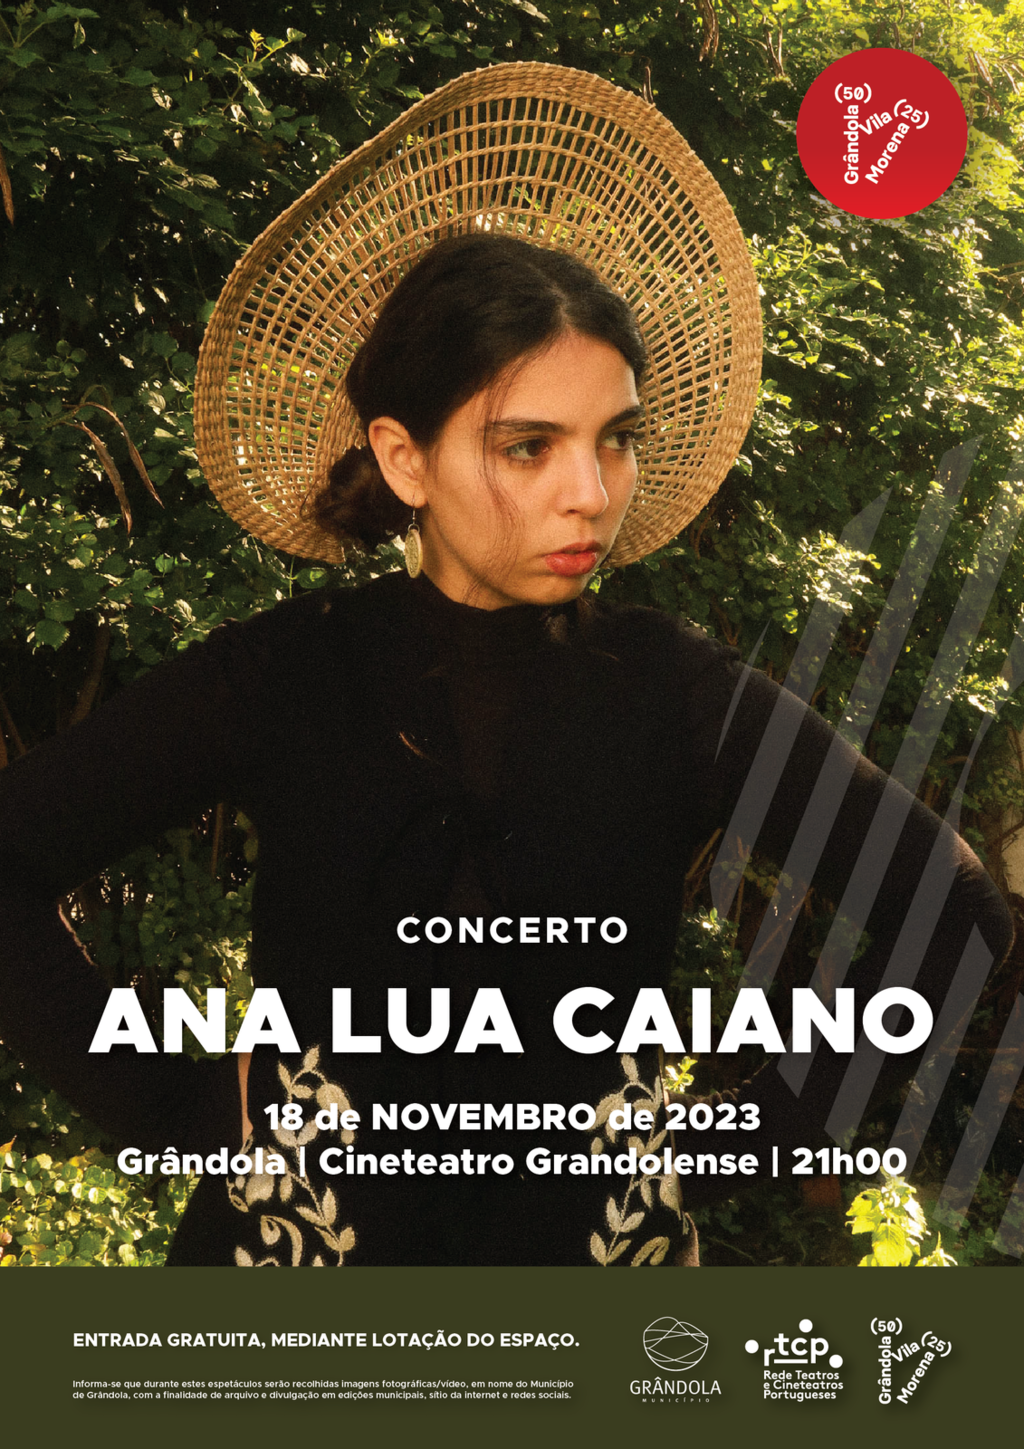 Concerto | Ana Lua Caiano